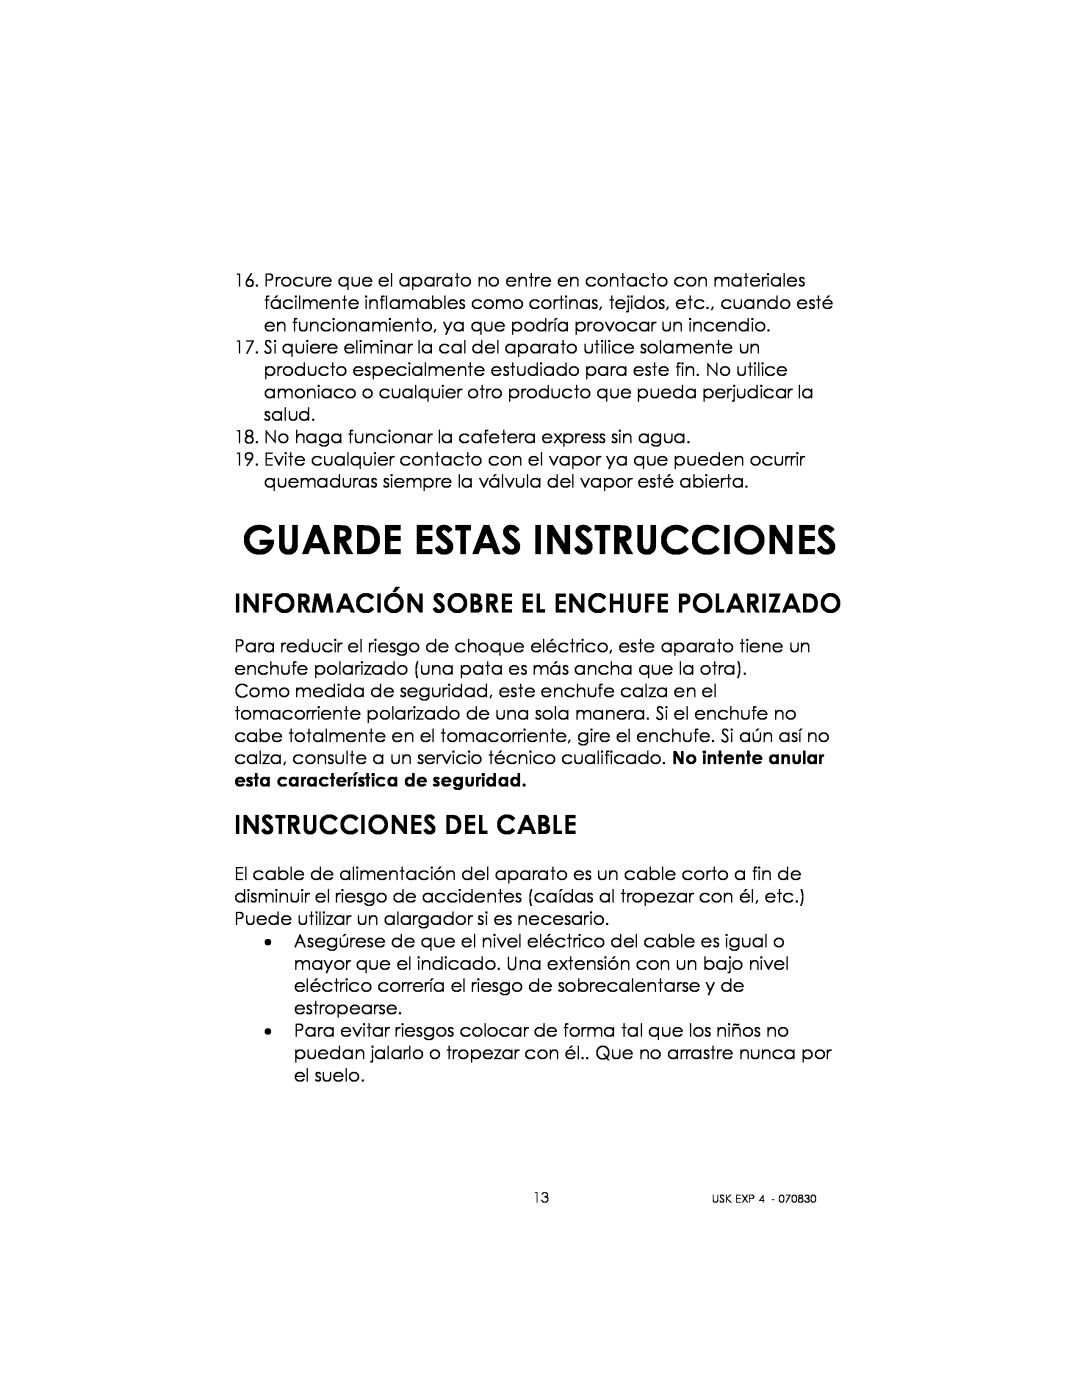 Kalorik USK EXP 4 manual Guarde Estas Instrucciones, Información Sobre El Enchufe Polarizado, Instrucciones Del Cable 